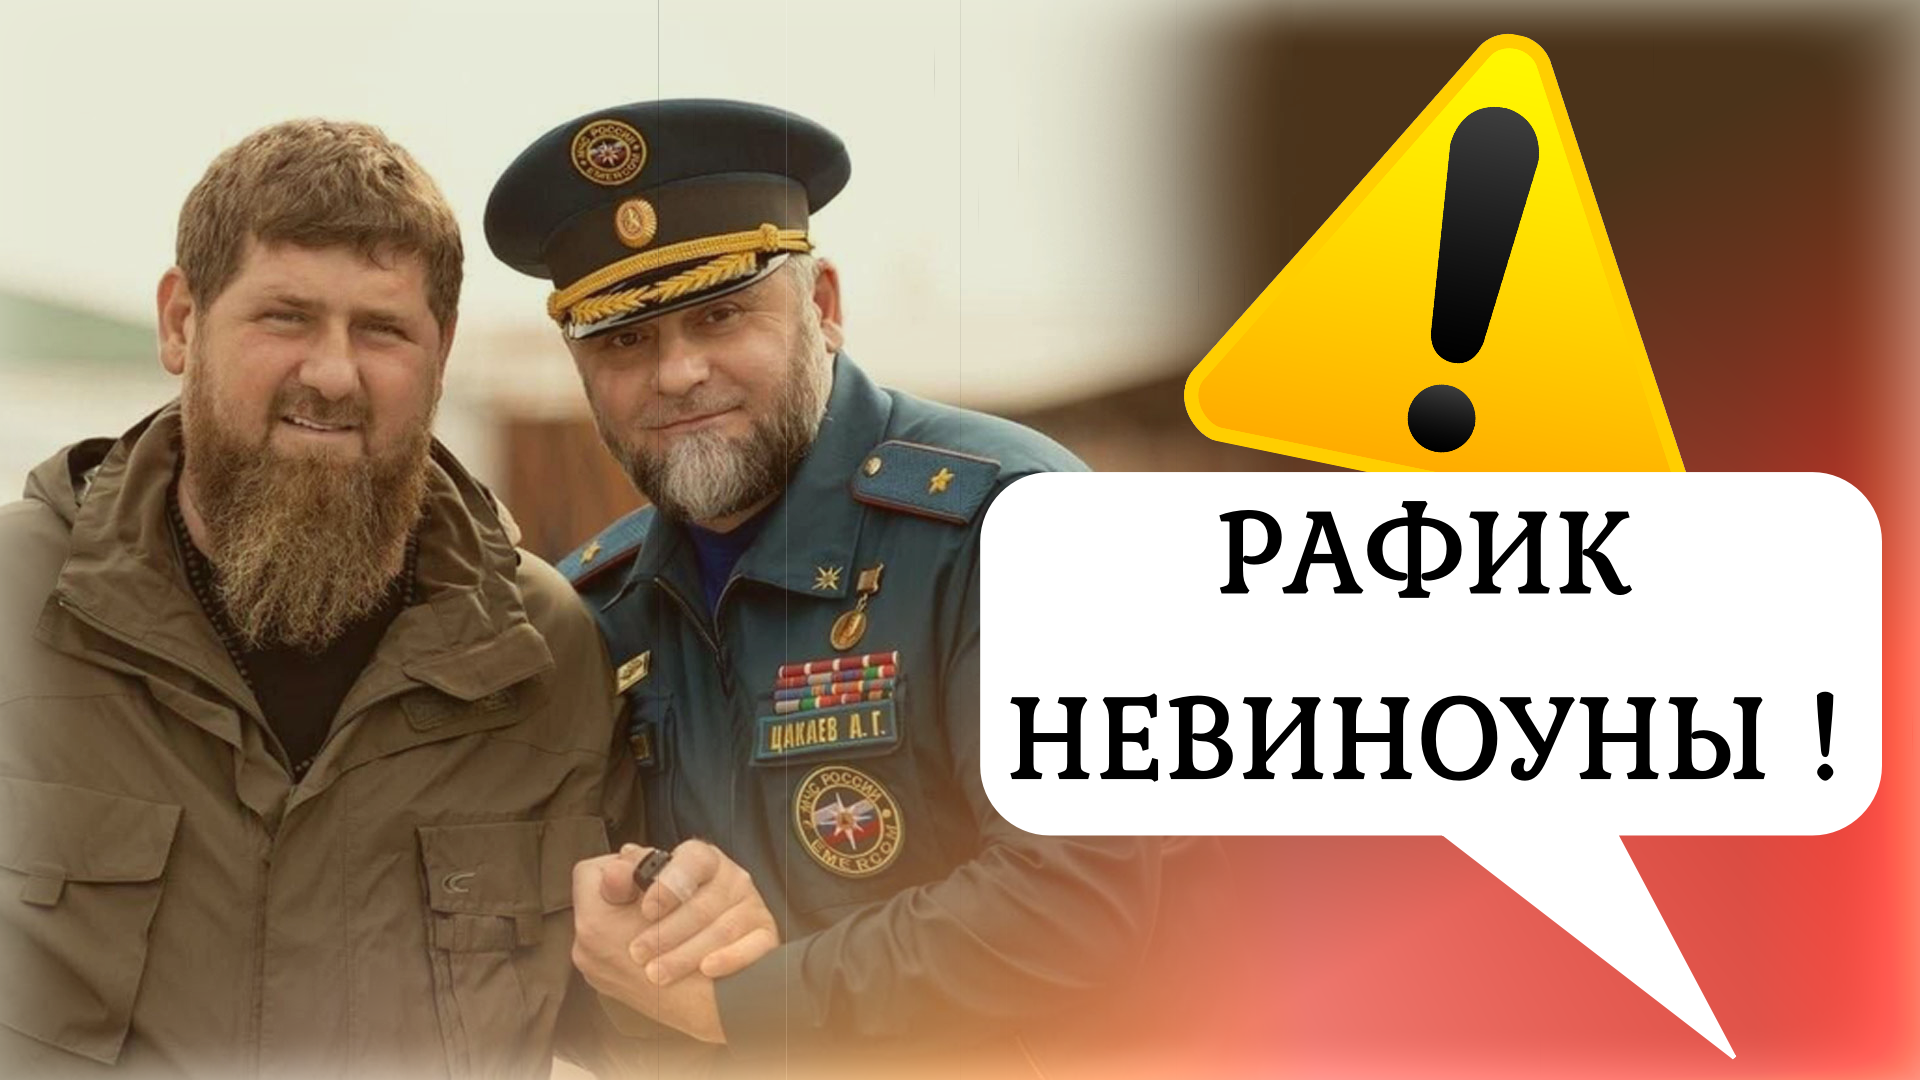 «Так больше не работает!» 💩 Кадыров получил чёткий сигнал из Кремля про заговор против него и Чечни